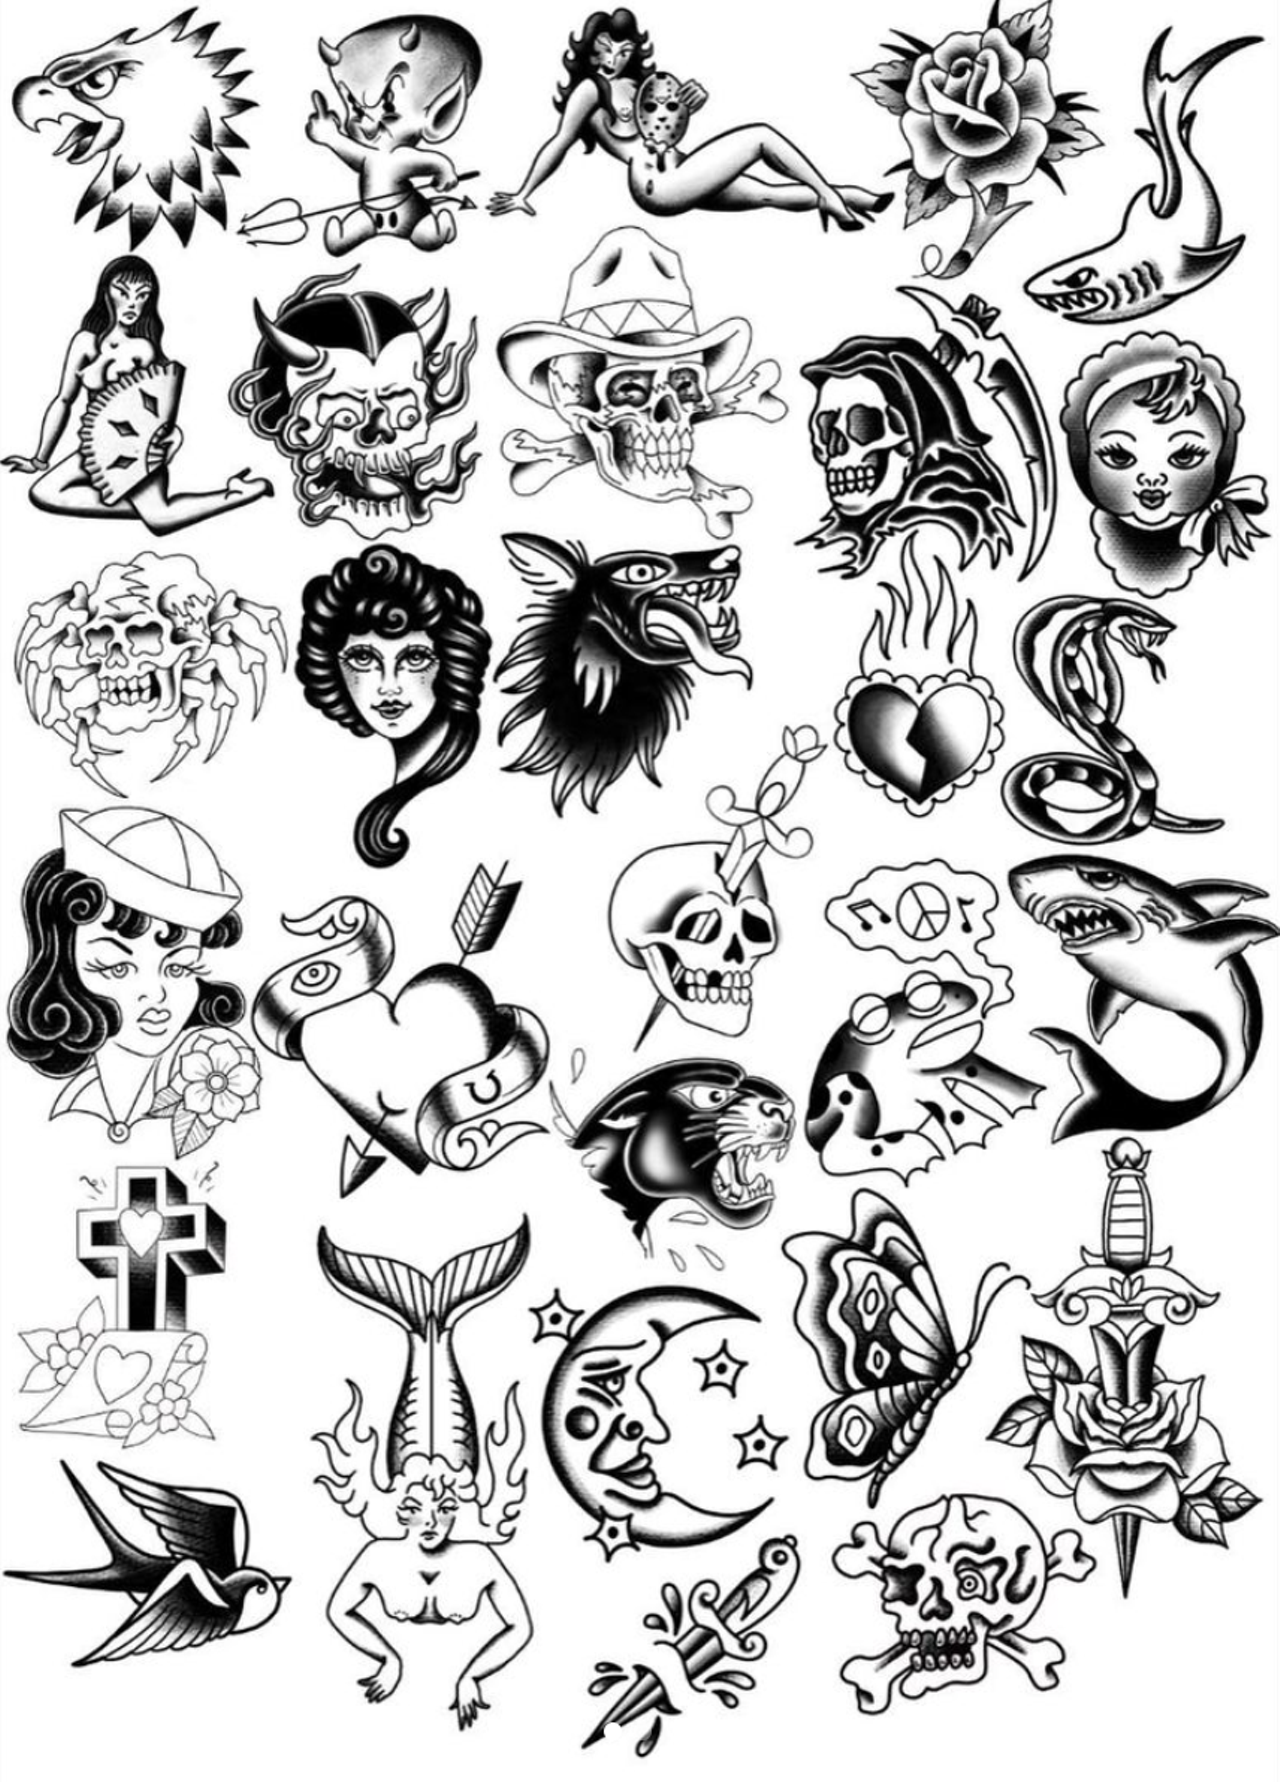 Doomsday Tattoos
910 San Pedro Avenue, (210) 957-1050, doomsdaytattoos.com
Photo via Instagram / dredsoull